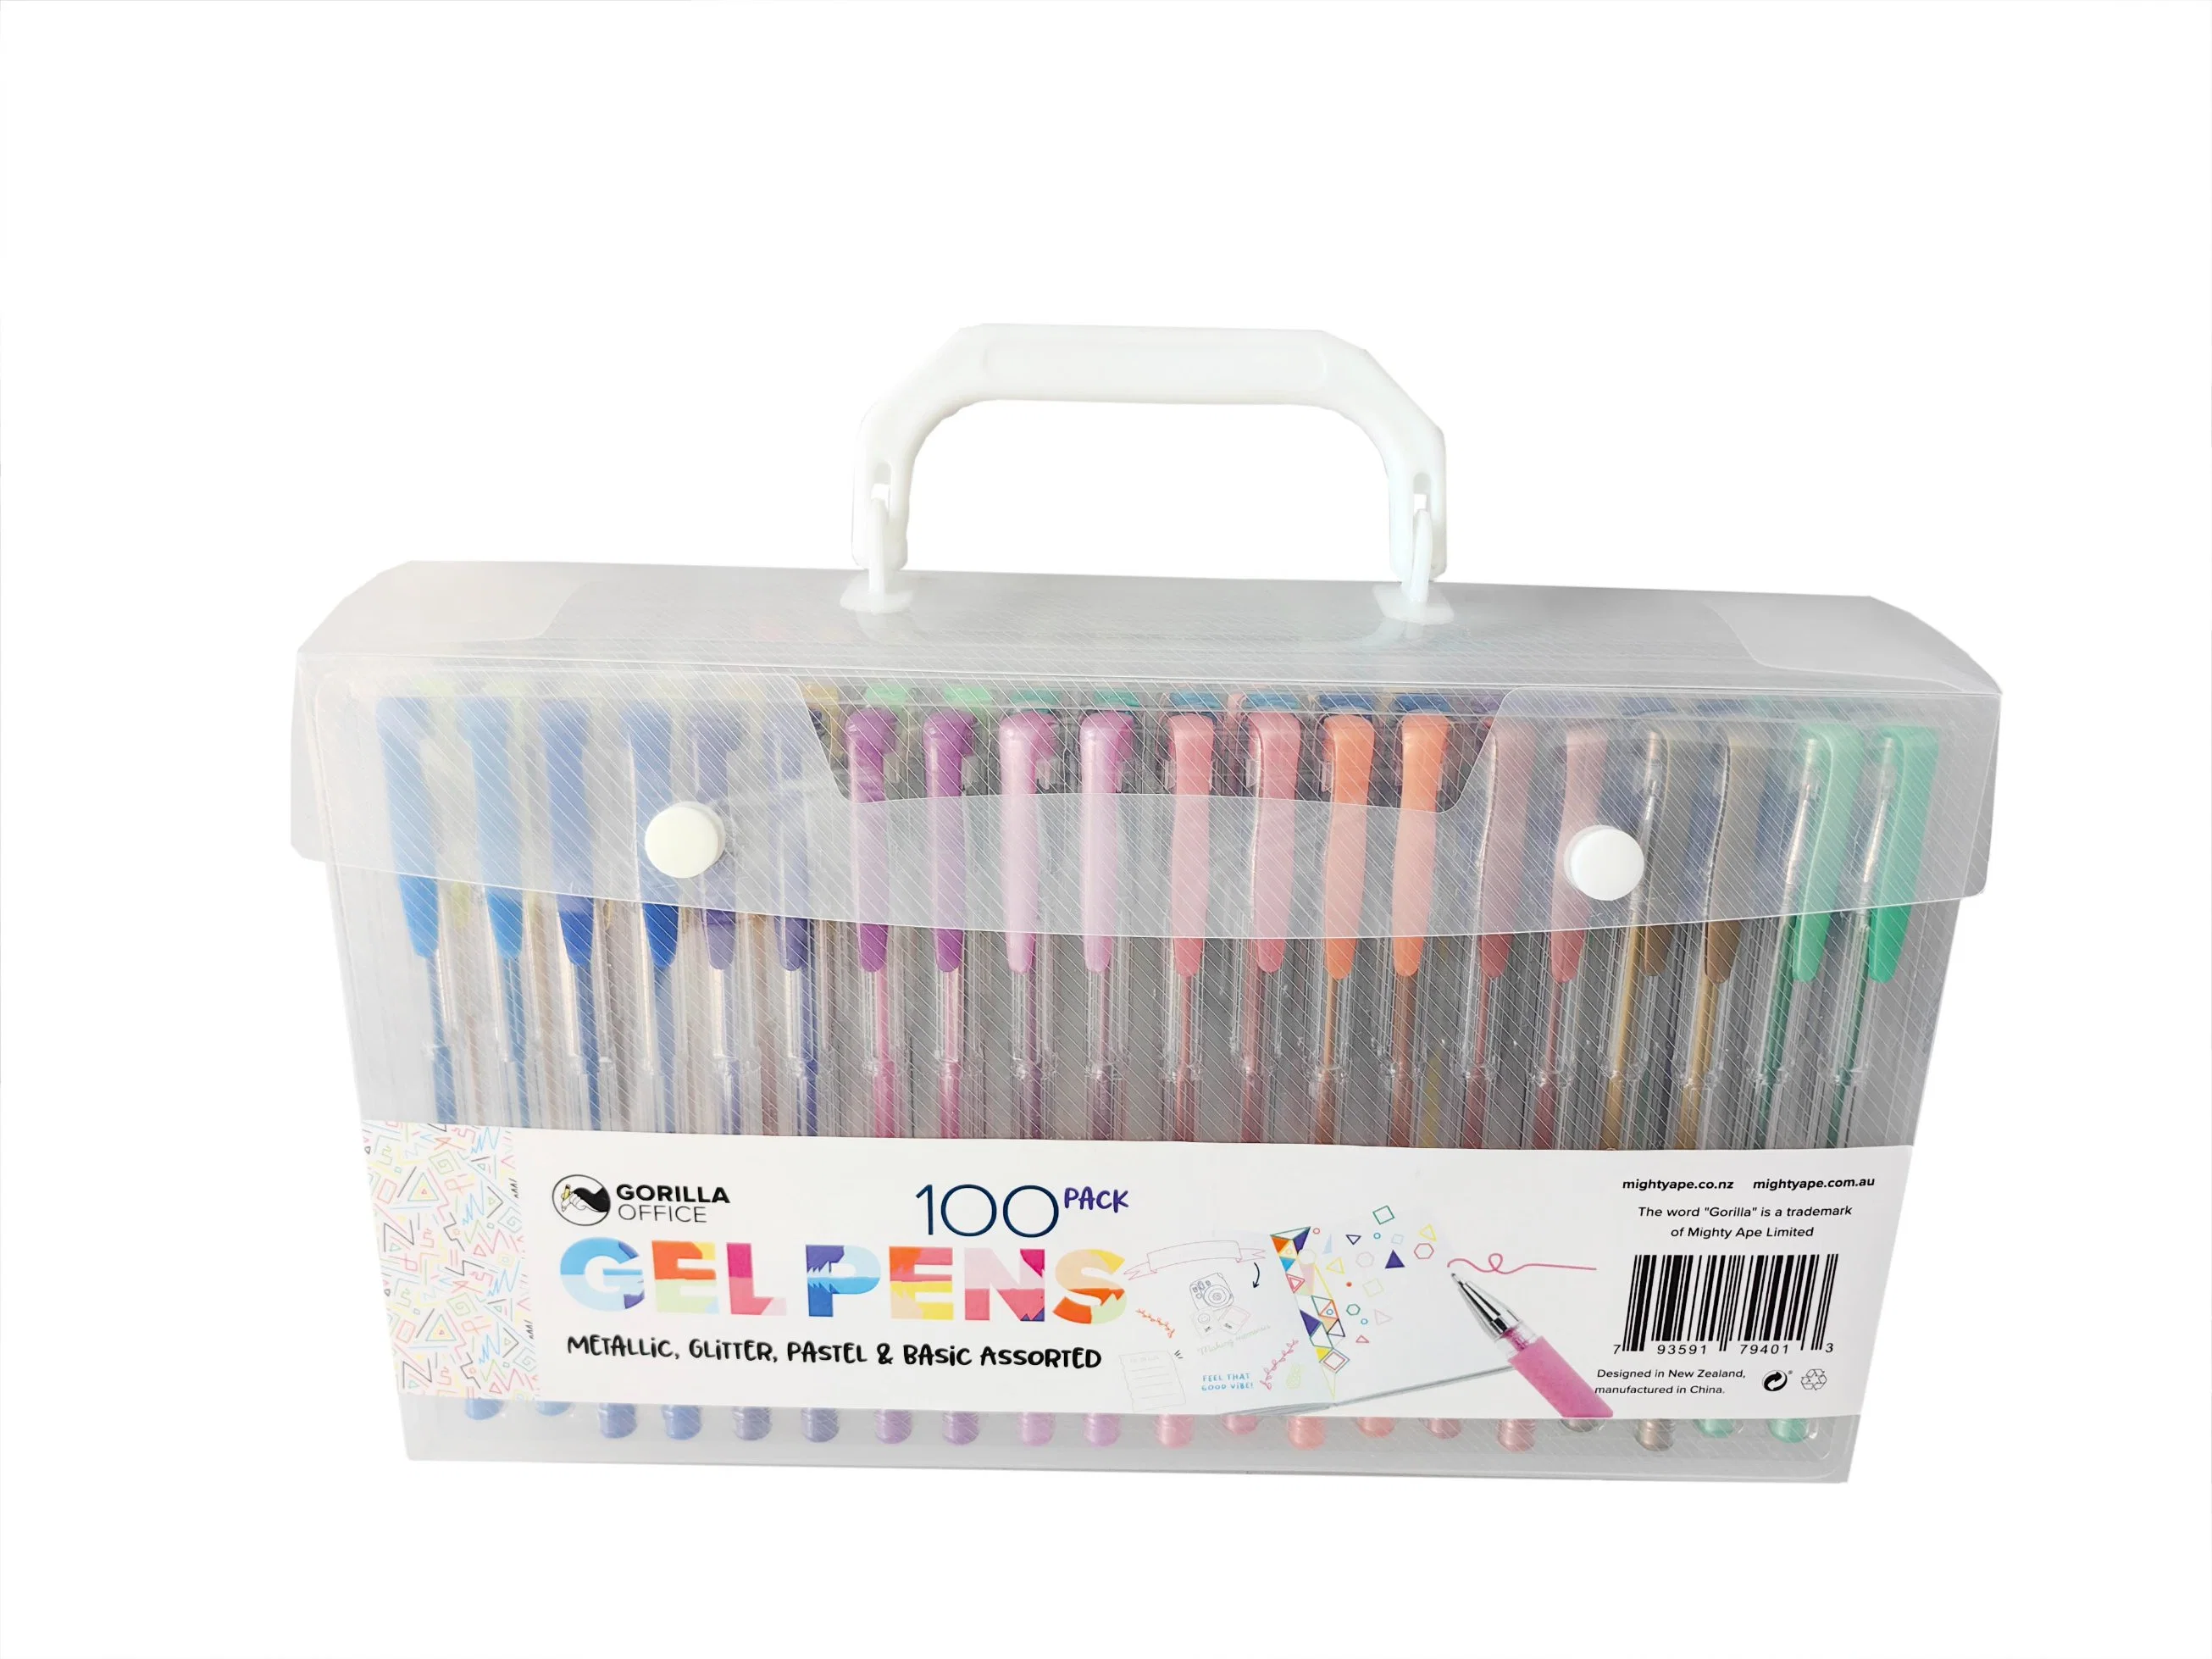 Meilleur stylo gel de qualité, ensemble de 100PCS, couleur pastel, pour l'école et le bureau.